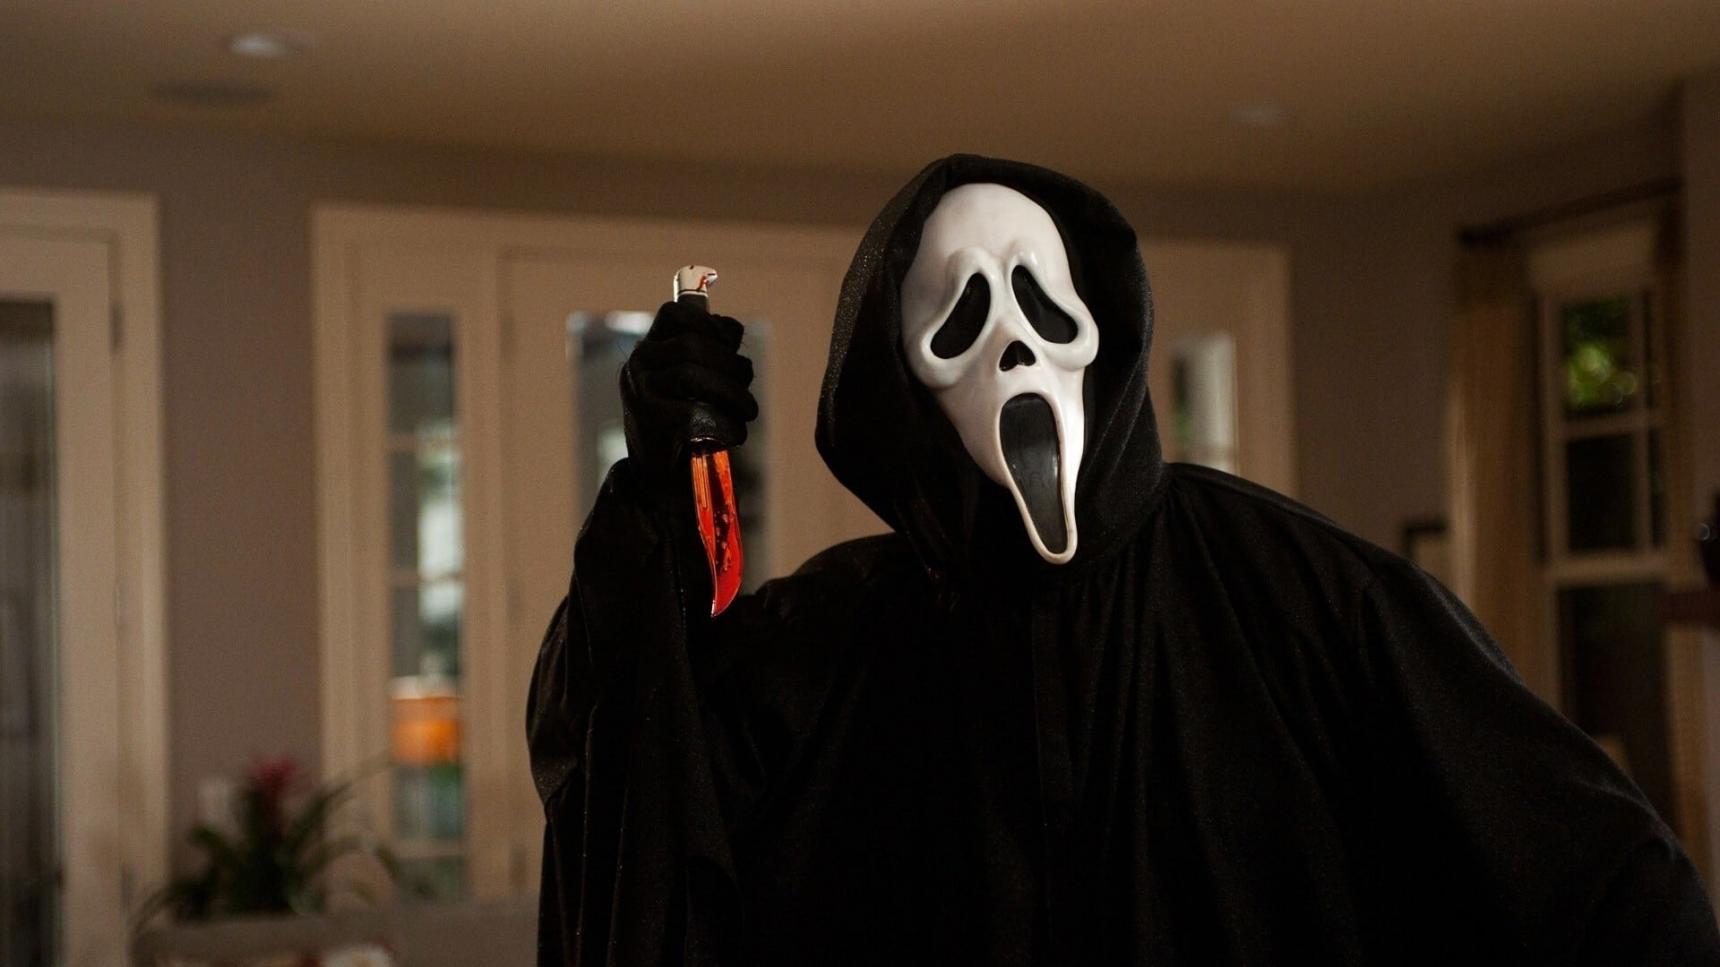 Fondo de pantalla de la película Scream 4 en Cuevana 3 gratis